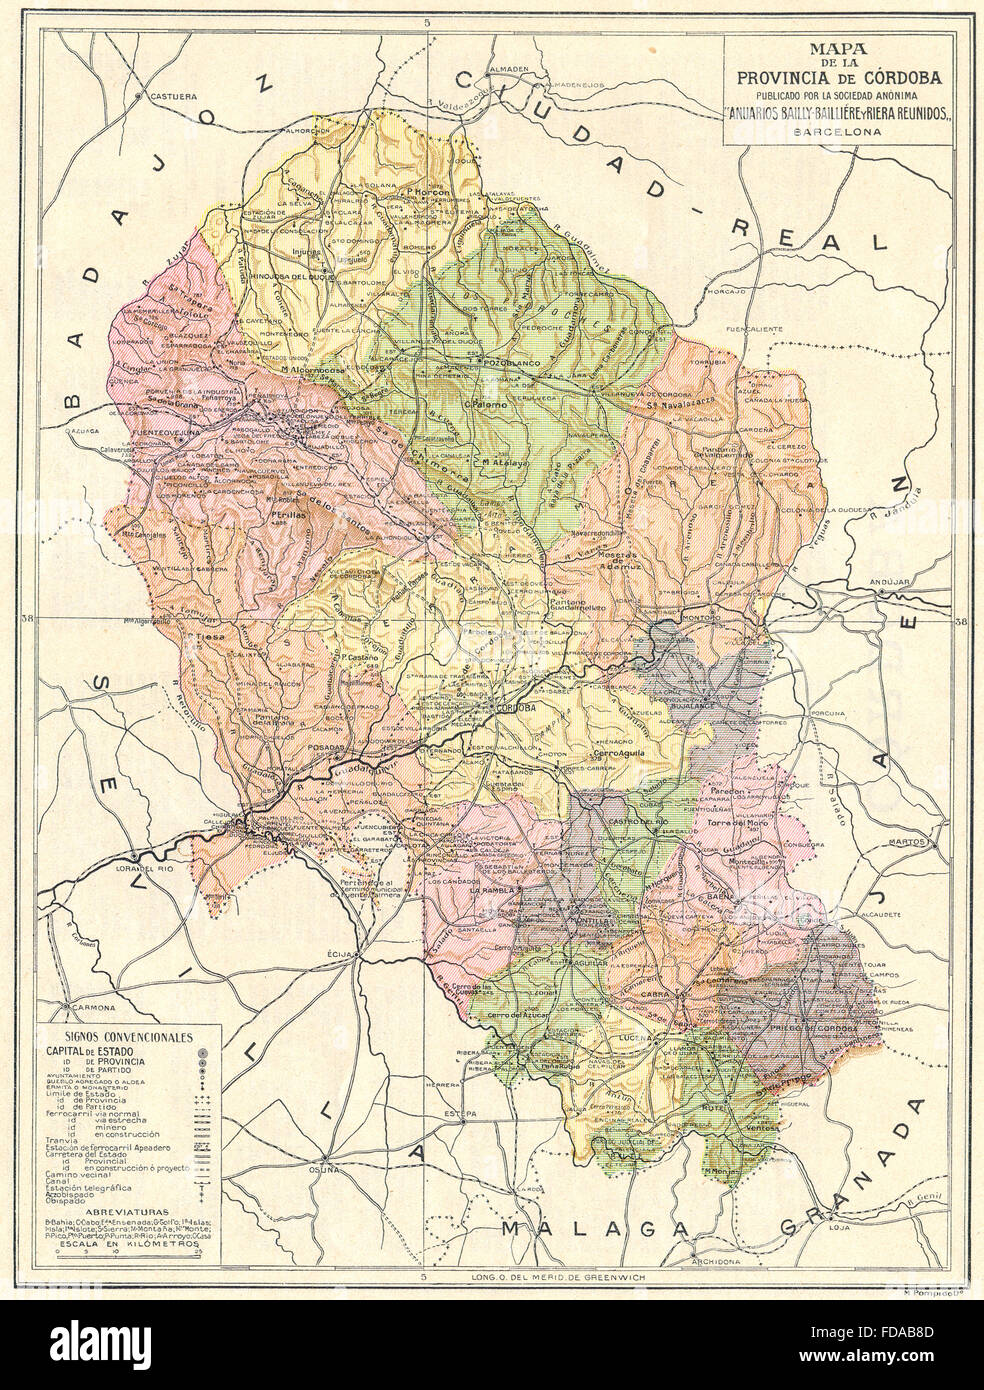 SPAIN: Mapa de la Provincia de Cordoba, 1913 Stock Photo